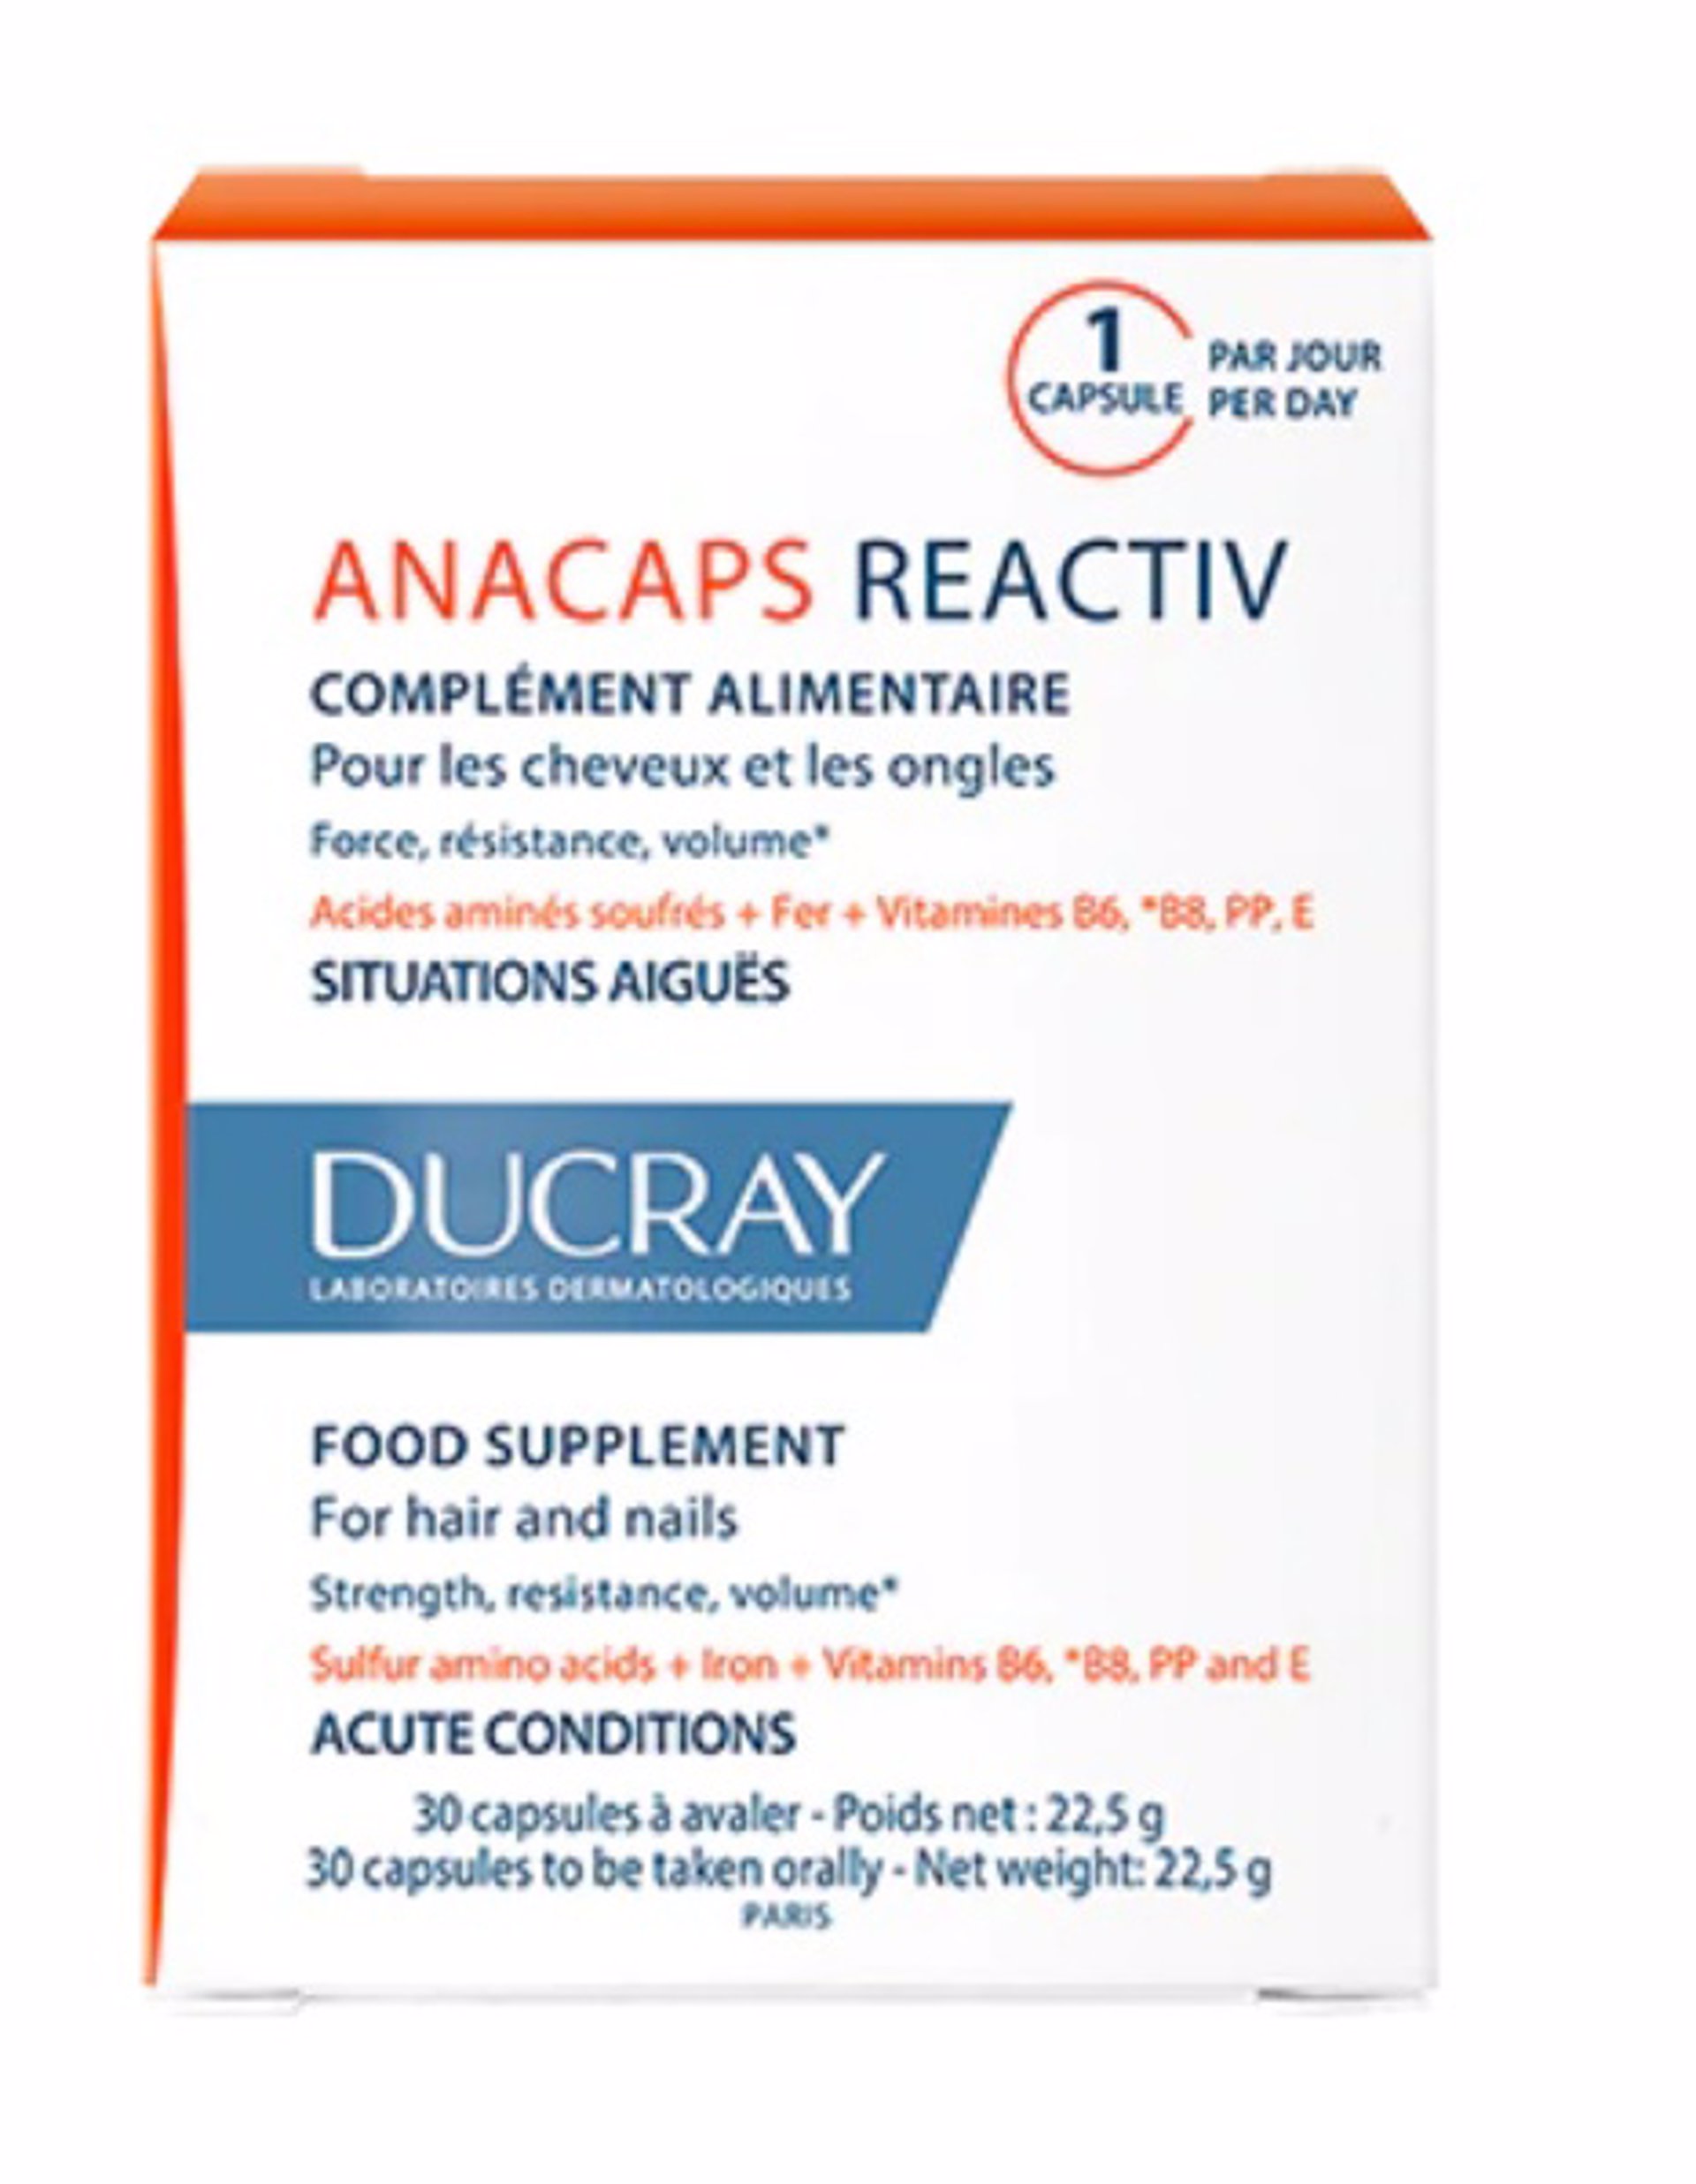 Anacaps de Ducray